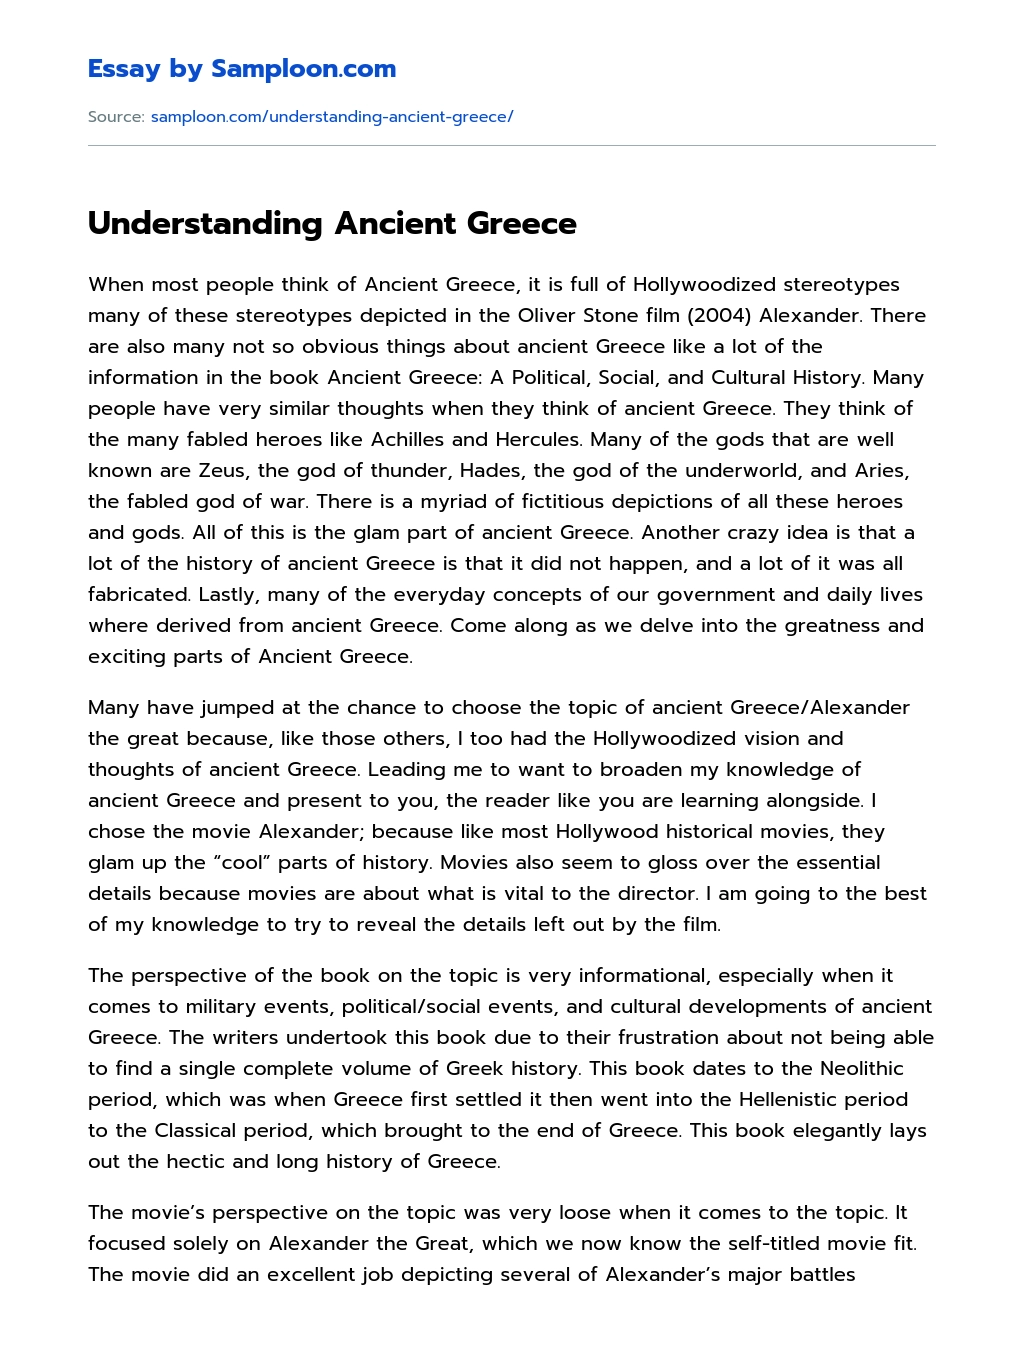 Understanding Ancient Greece essay